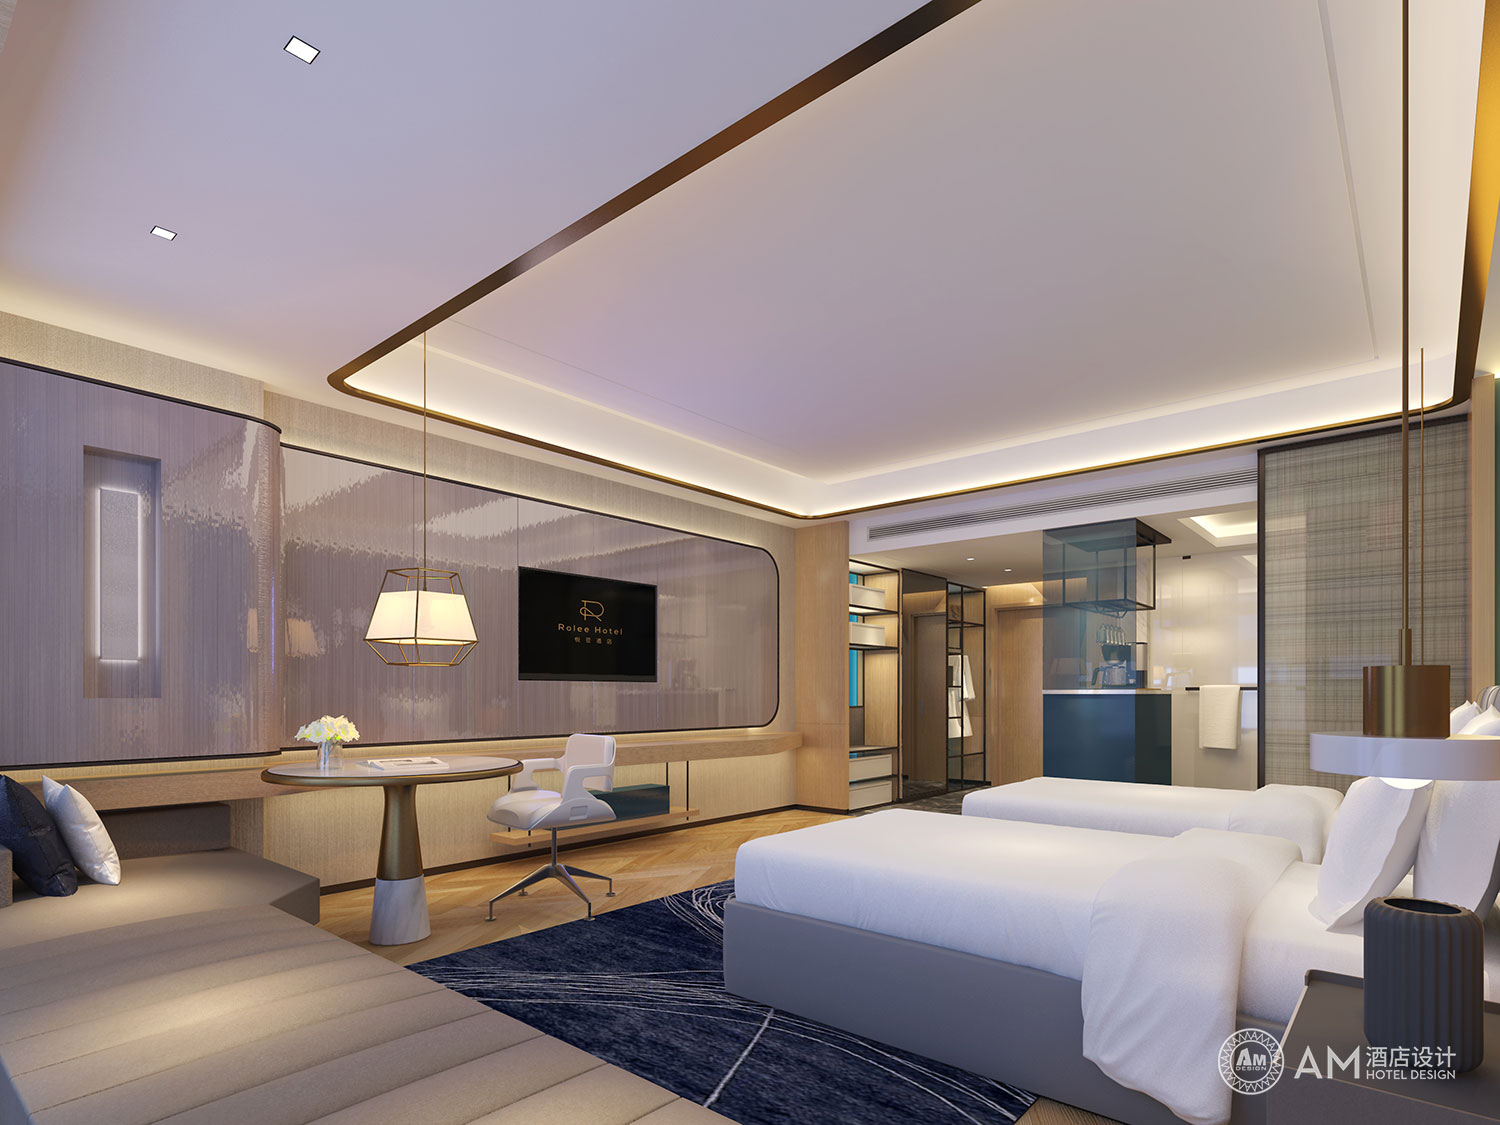 AM DESIGN | Yueli hotel design room design